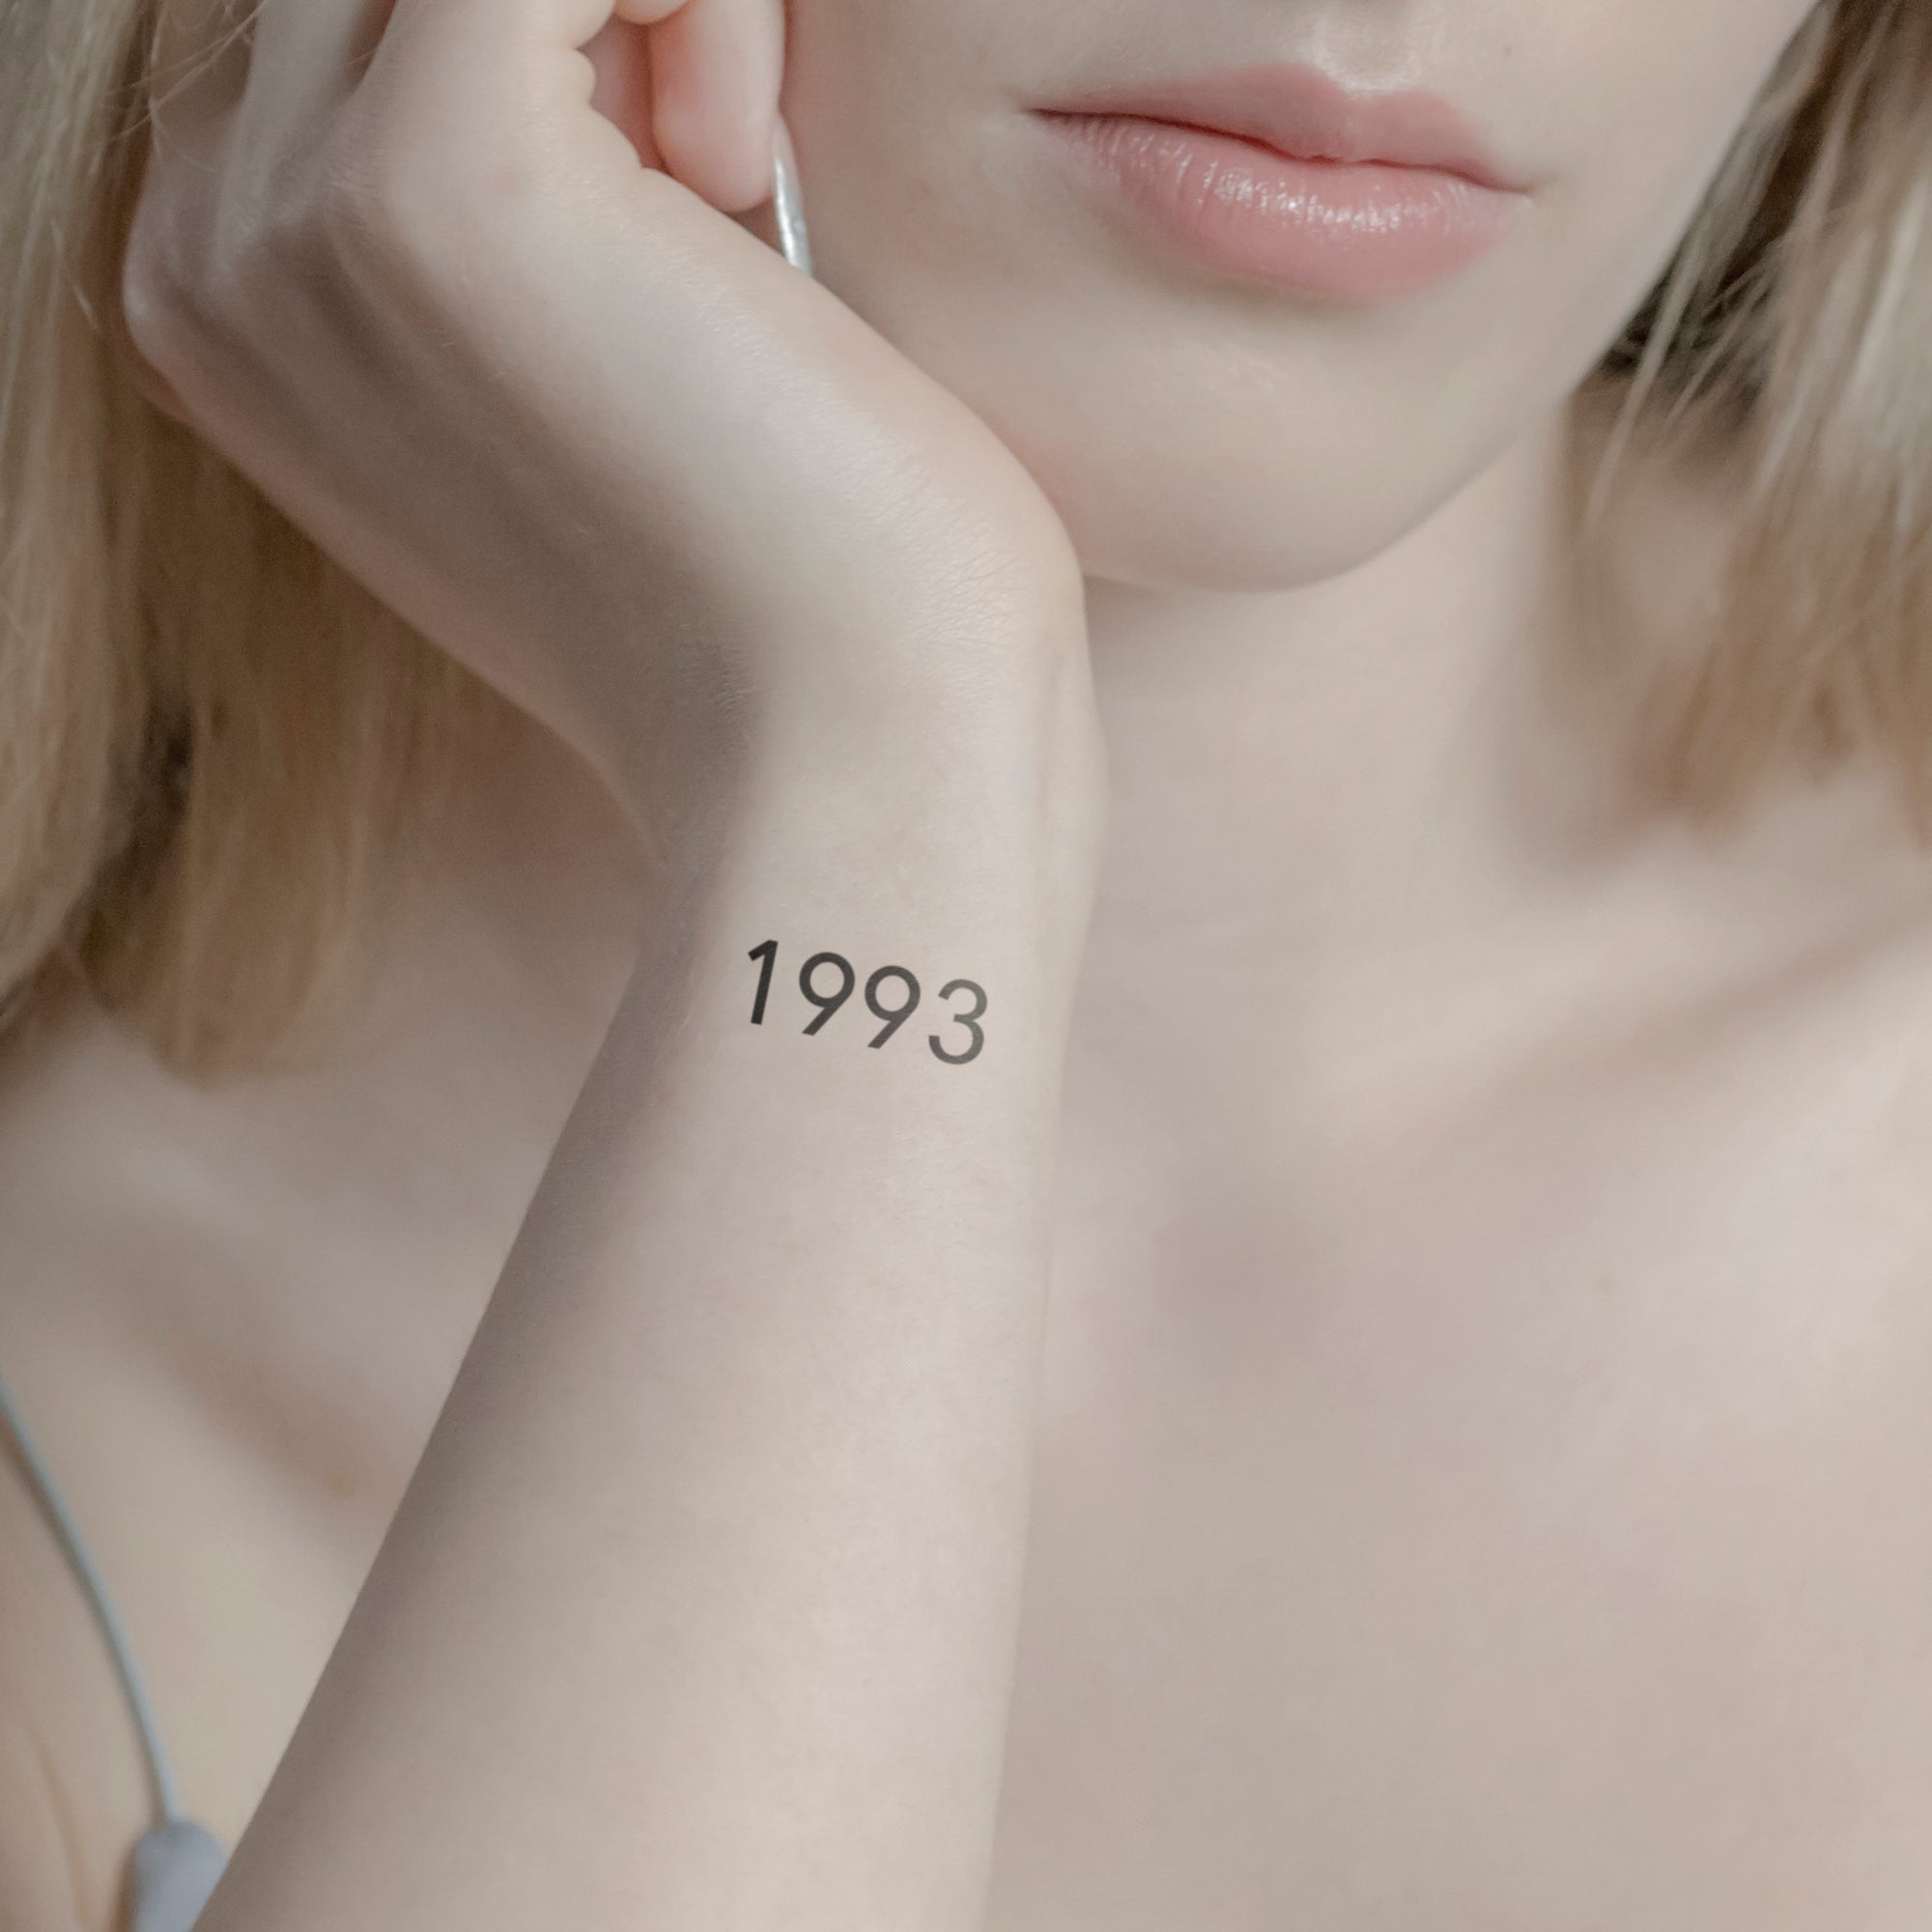 Roman Numerals Tattoo / Roman Number Tattoo / Roman Date Tattoo - YouTube